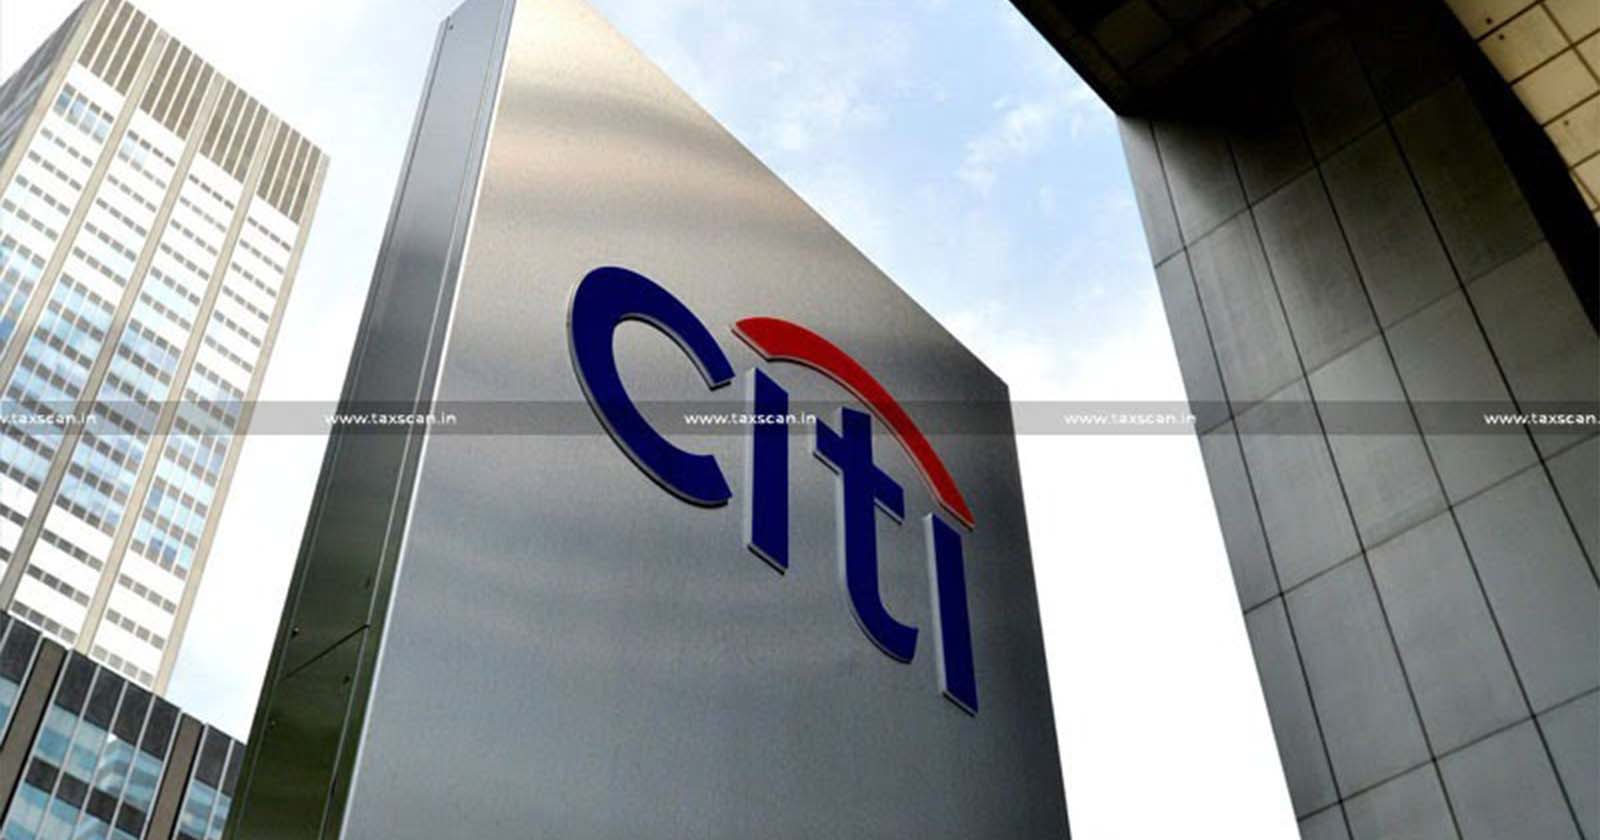 CA Vacancy in Citi - CA hiring in Citi - CA opportunities in Citi - CA careers in Citi - CA opening in Citi - taxscan